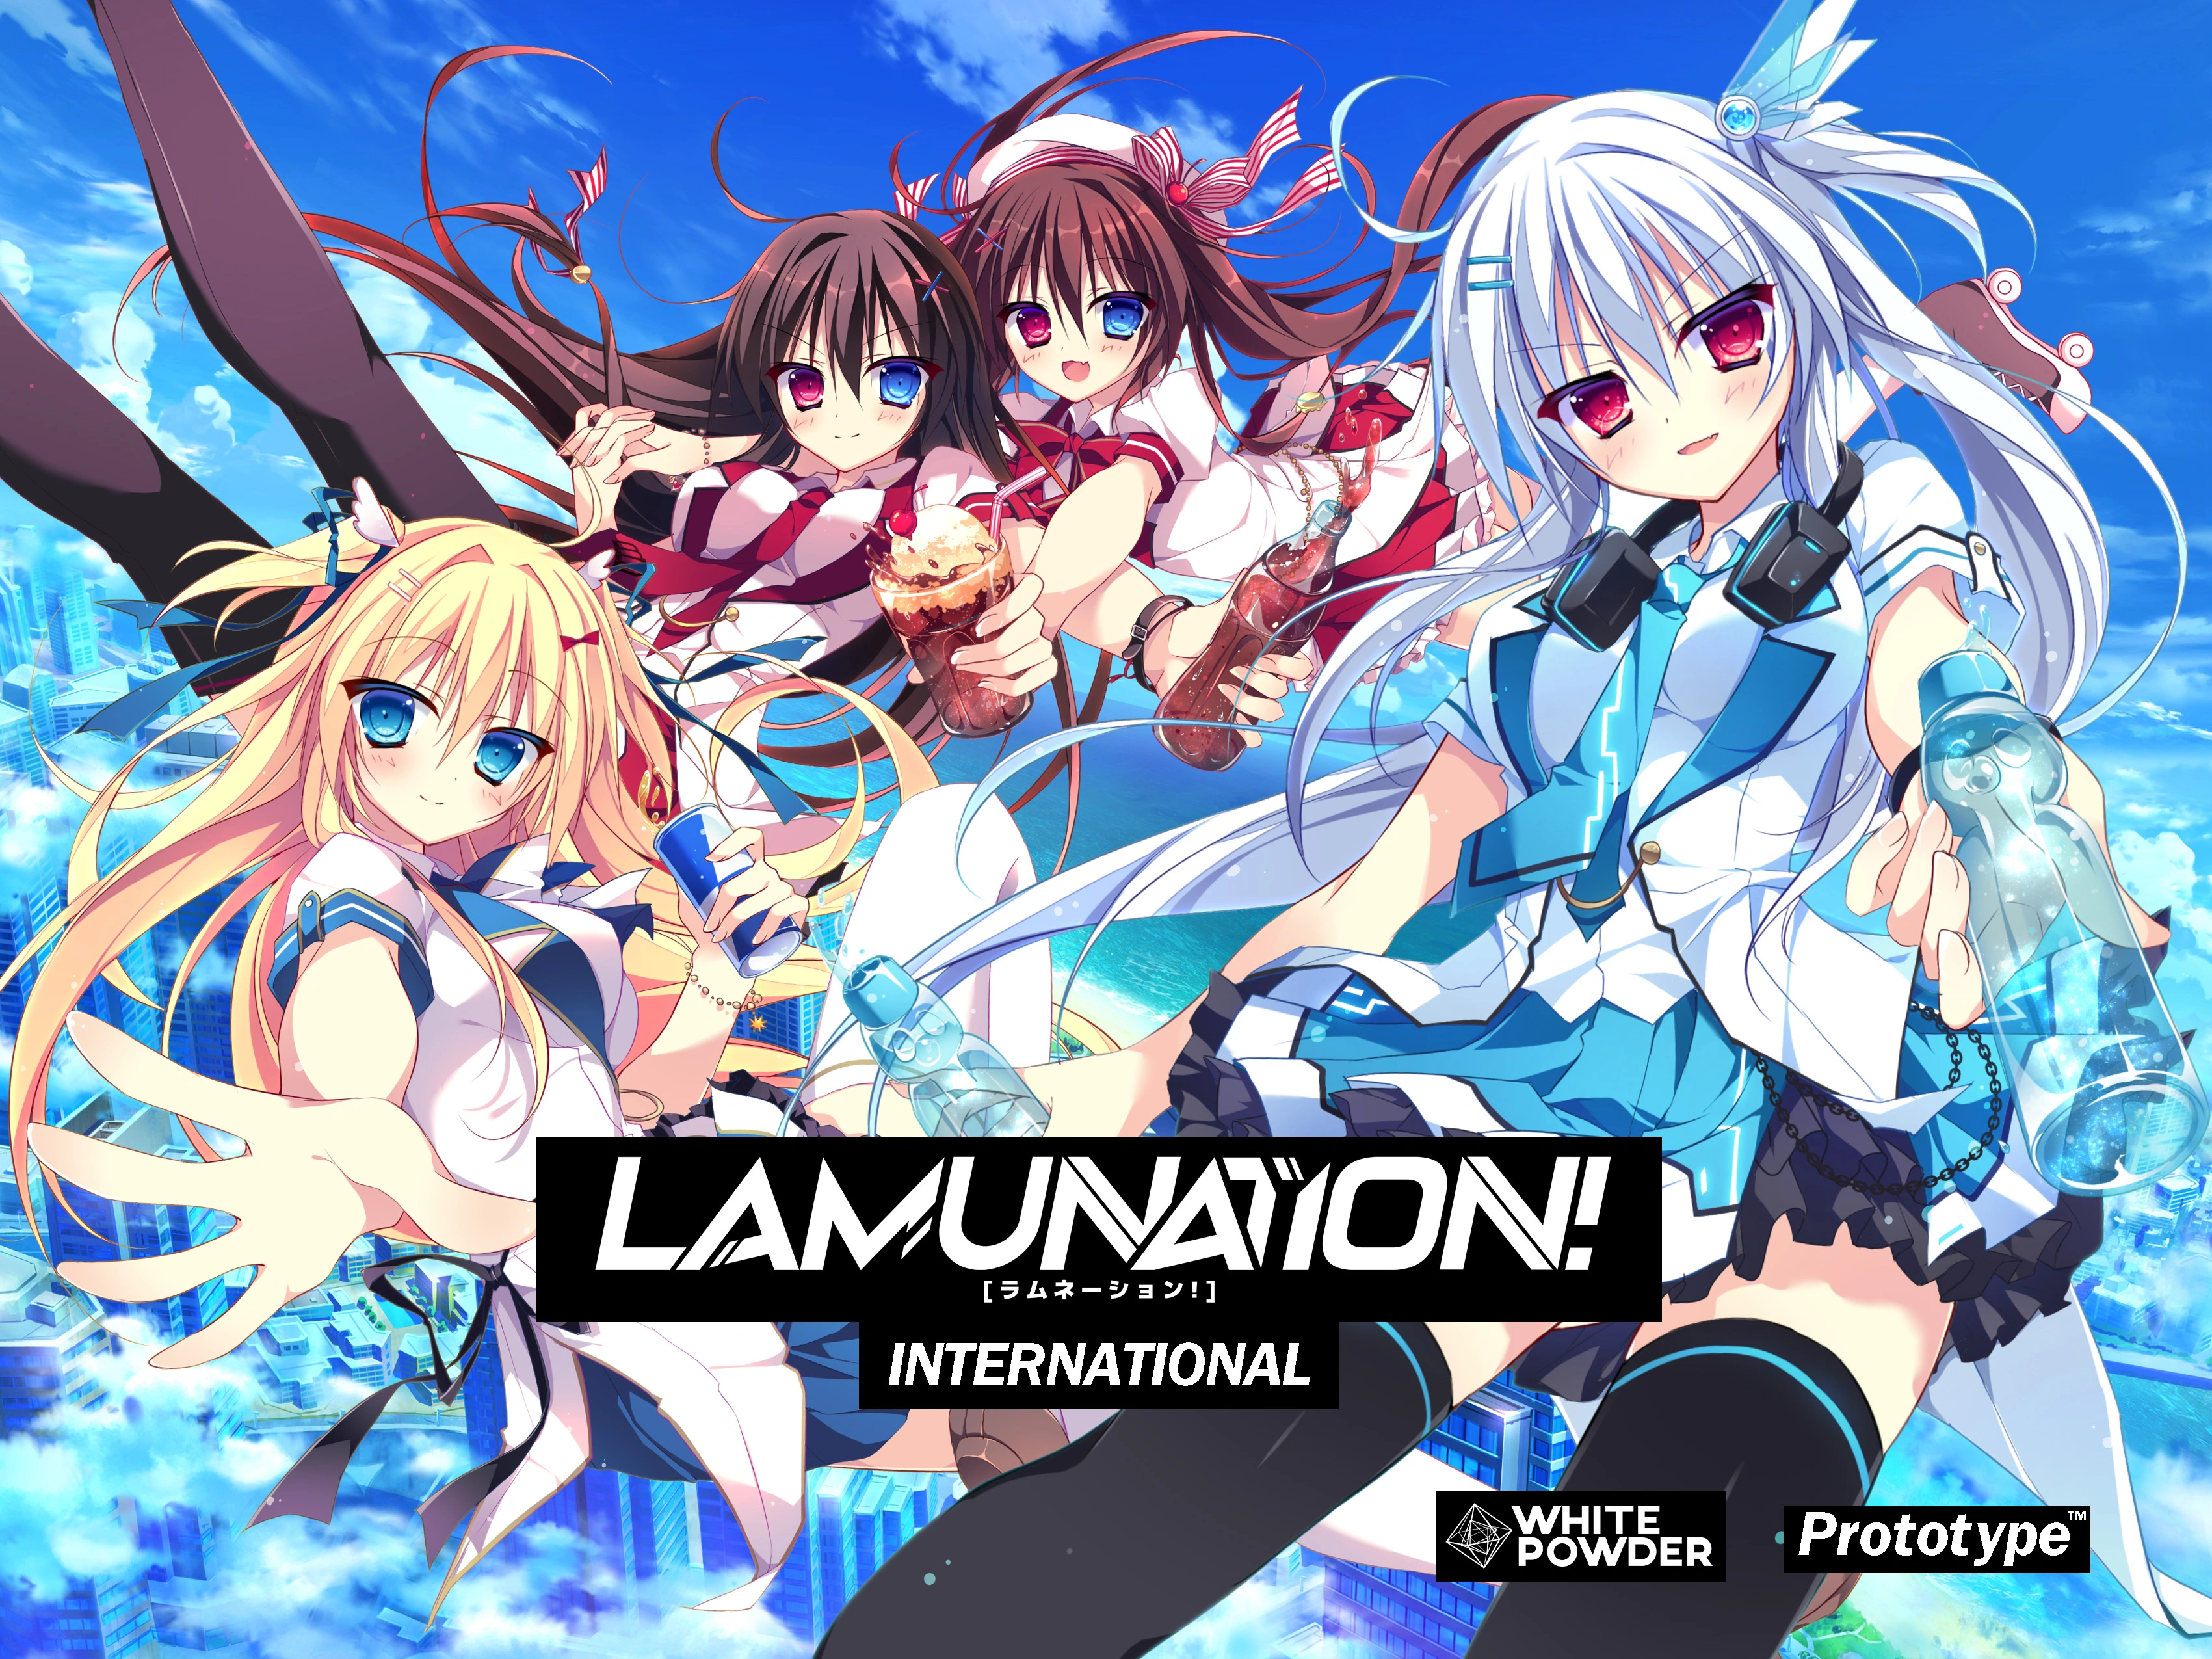 LAMUNATION! -International- main image